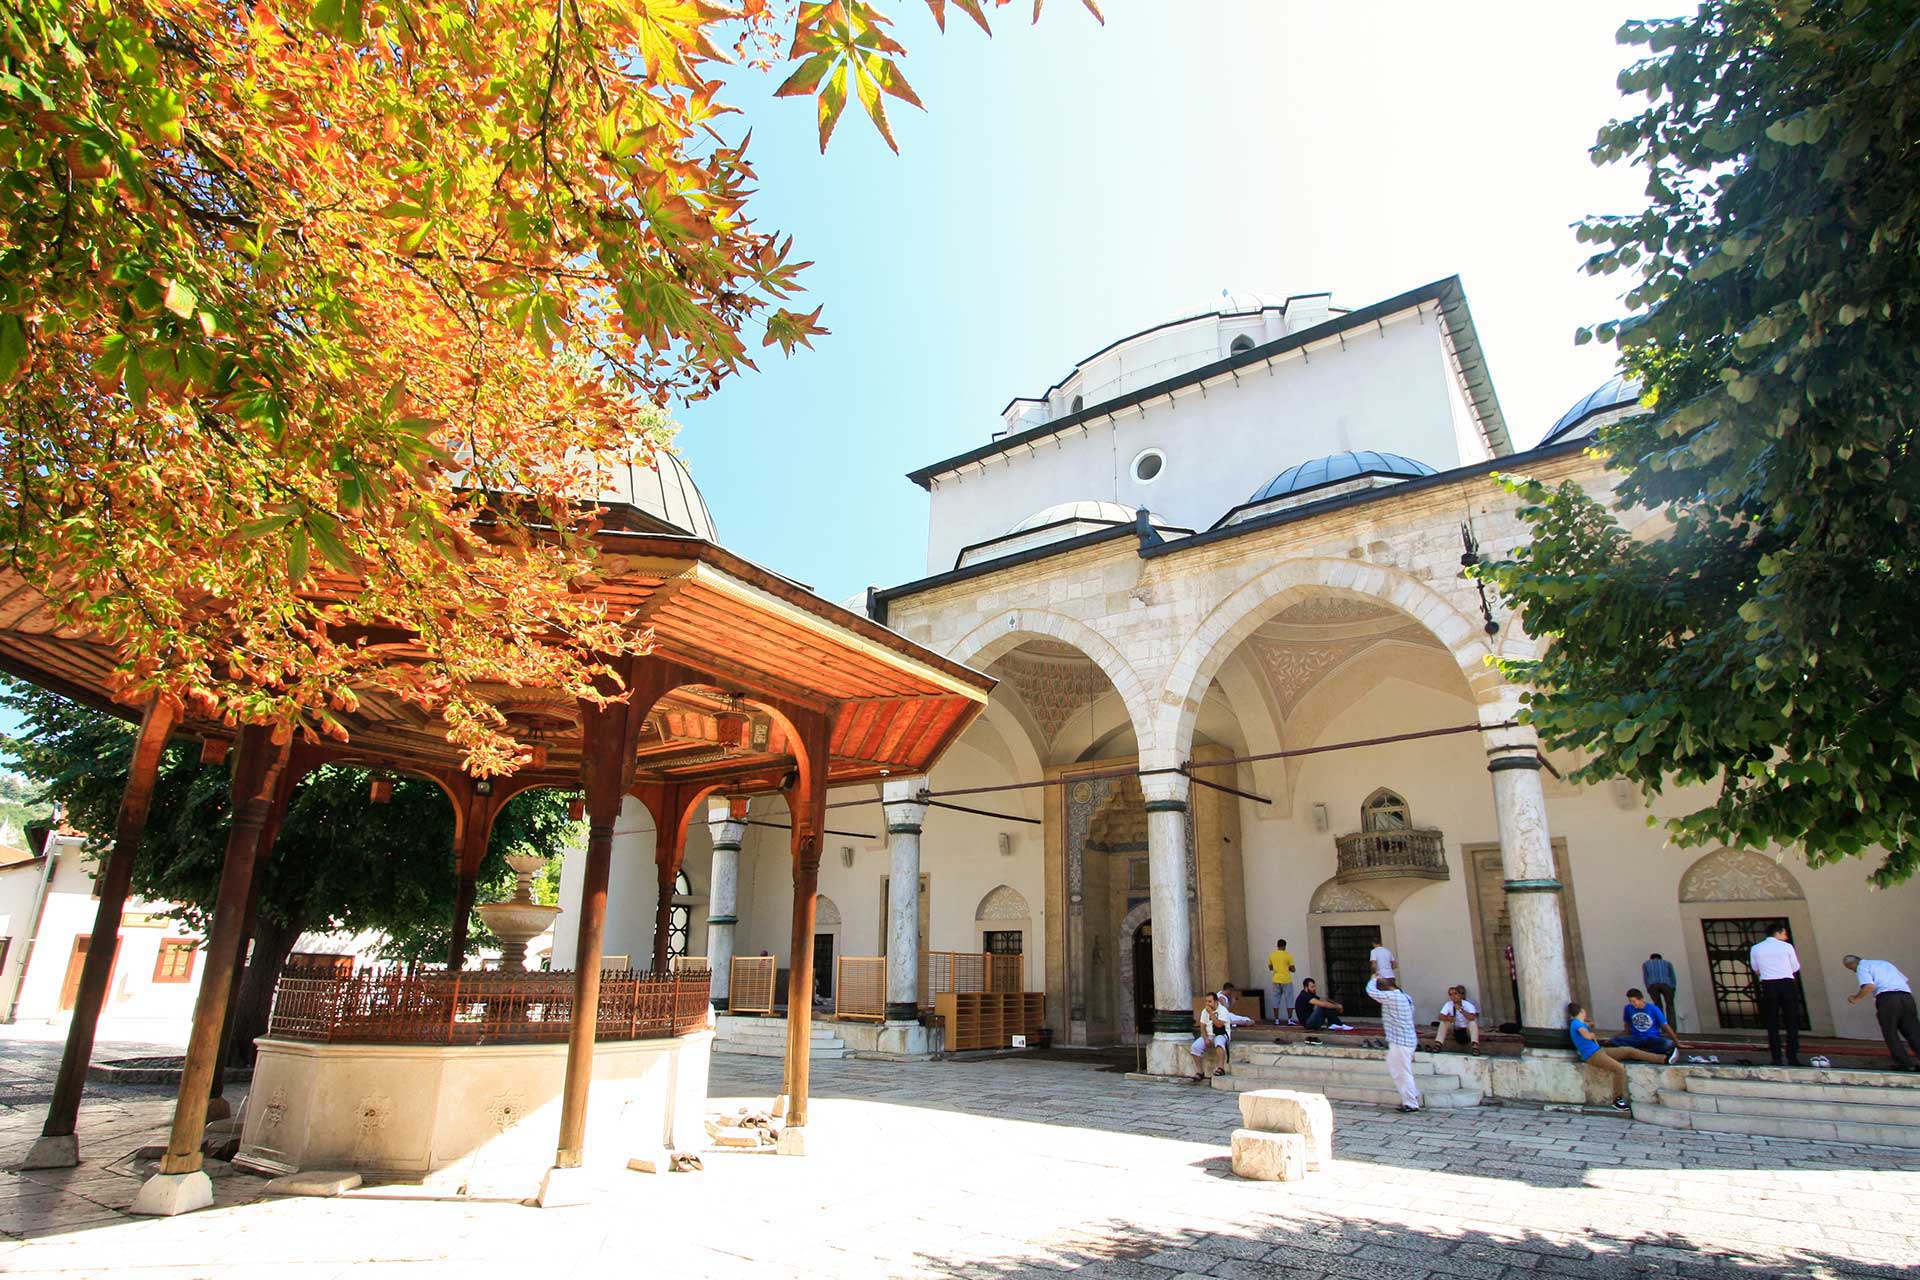 Sarajevo - Gazi Husrev-beg Mosque